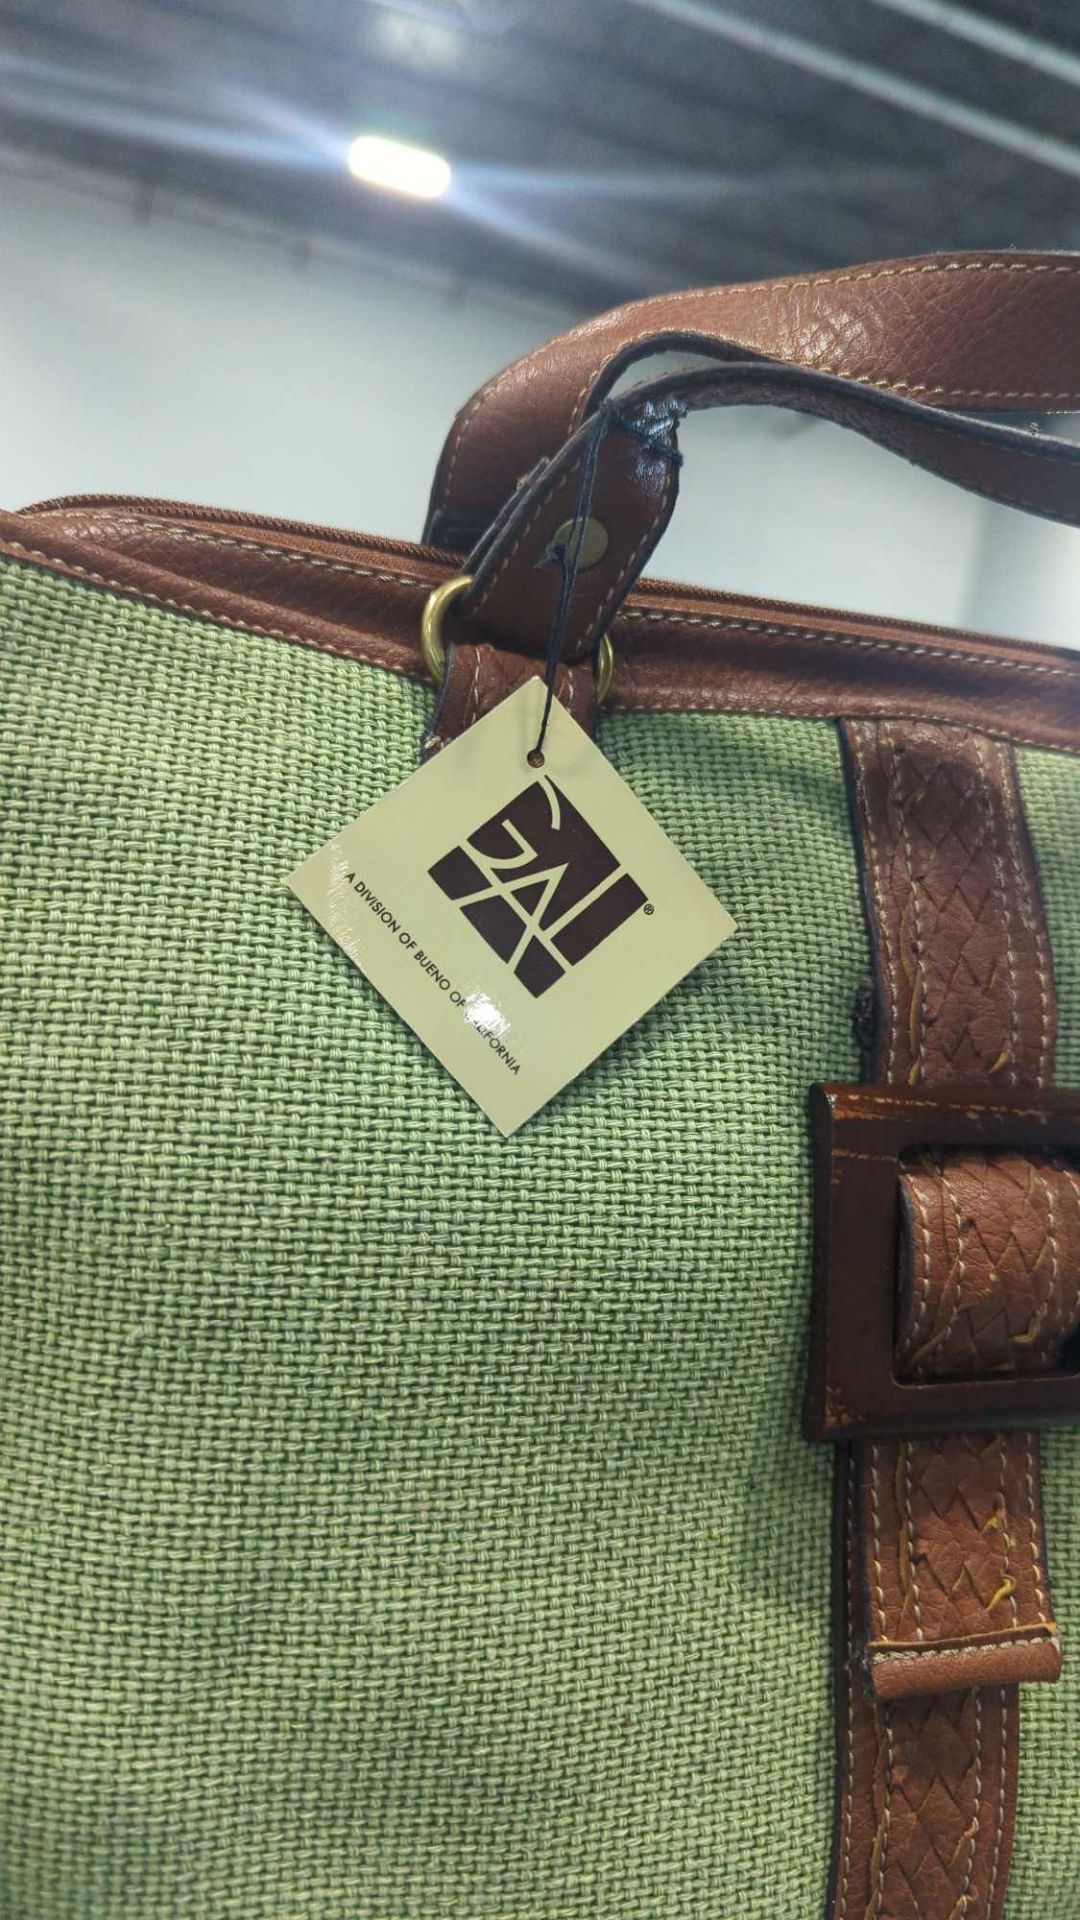 Pallet- Gal Handbags, Donna Bella design handbags